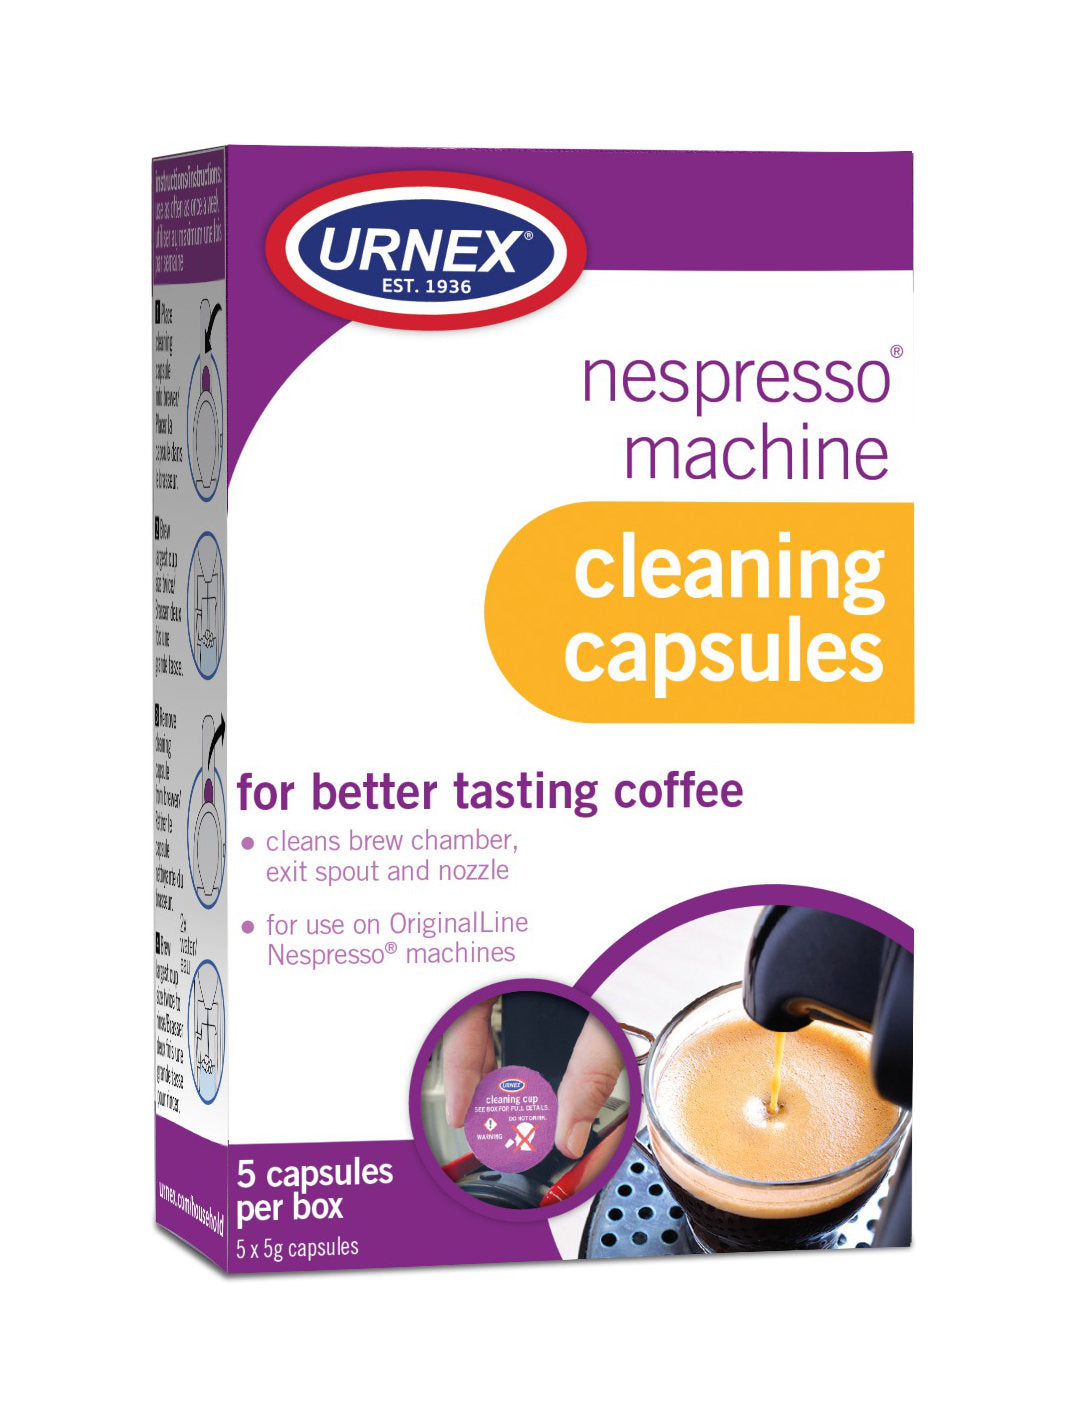 URNEX Nespresso Machine Cleaning Capsules